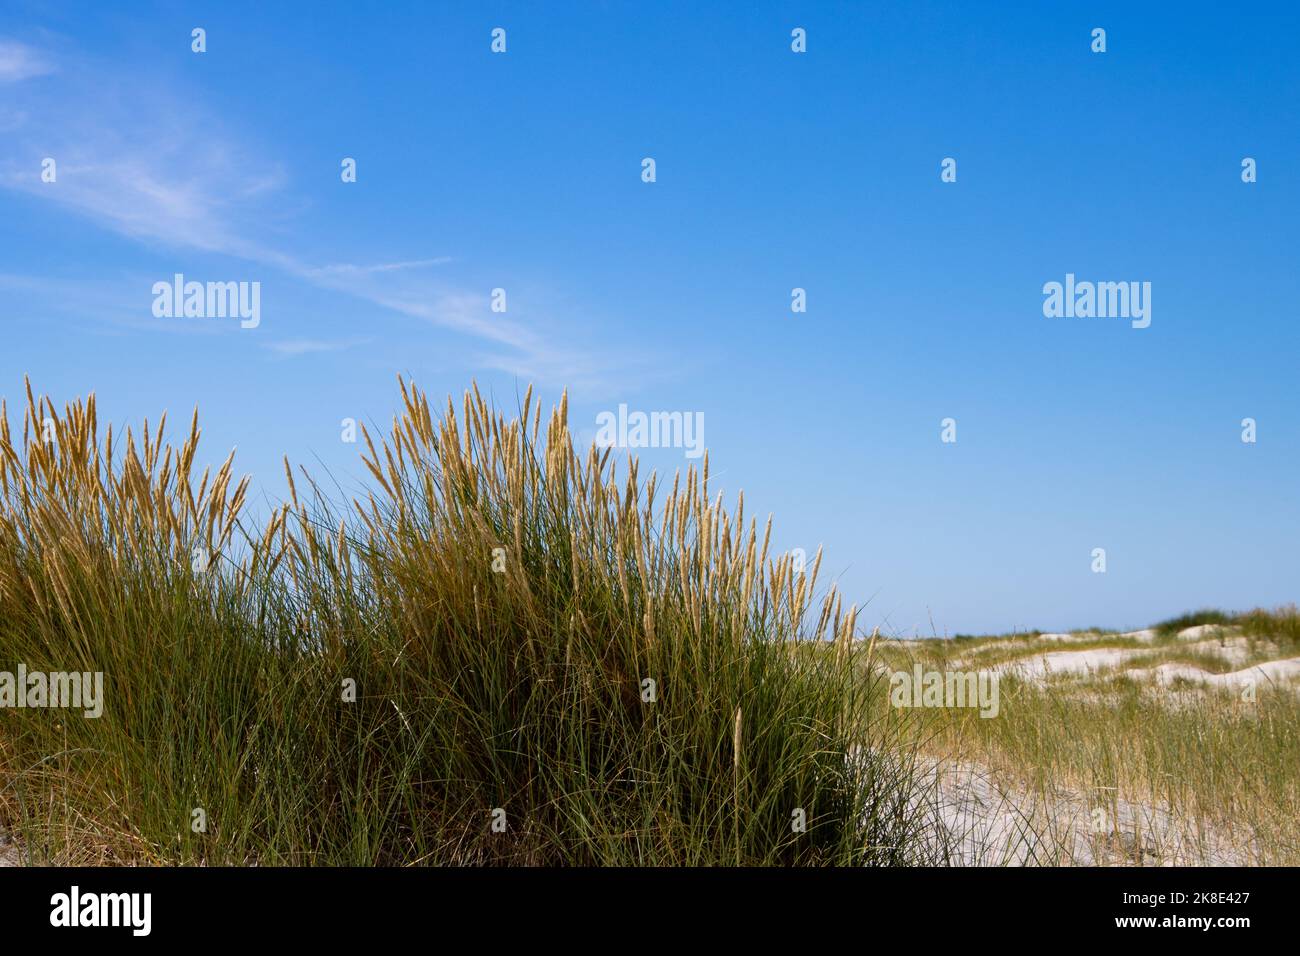 Nahaufnahme des Strandes oder des Marrammgrases, auch Ammophila arenaria oder Strandhafer genannt Stockfoto